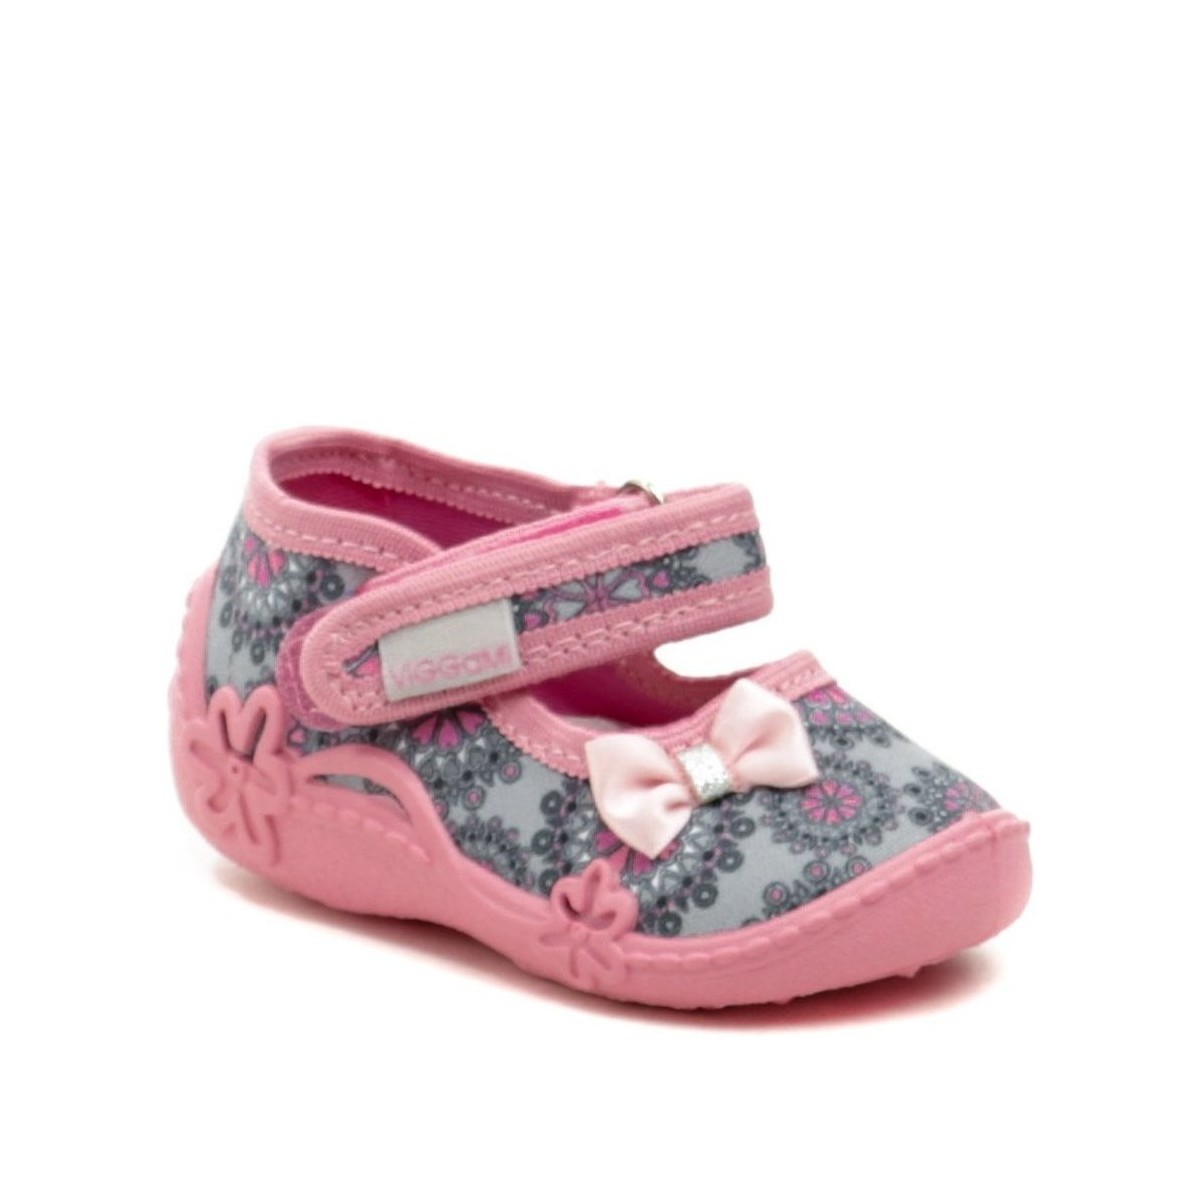 Boty Dívčí Bačkůrky pro miminka Vi-Gga-Mi růžové dětské plátěné sandálky BIANKA Šedá